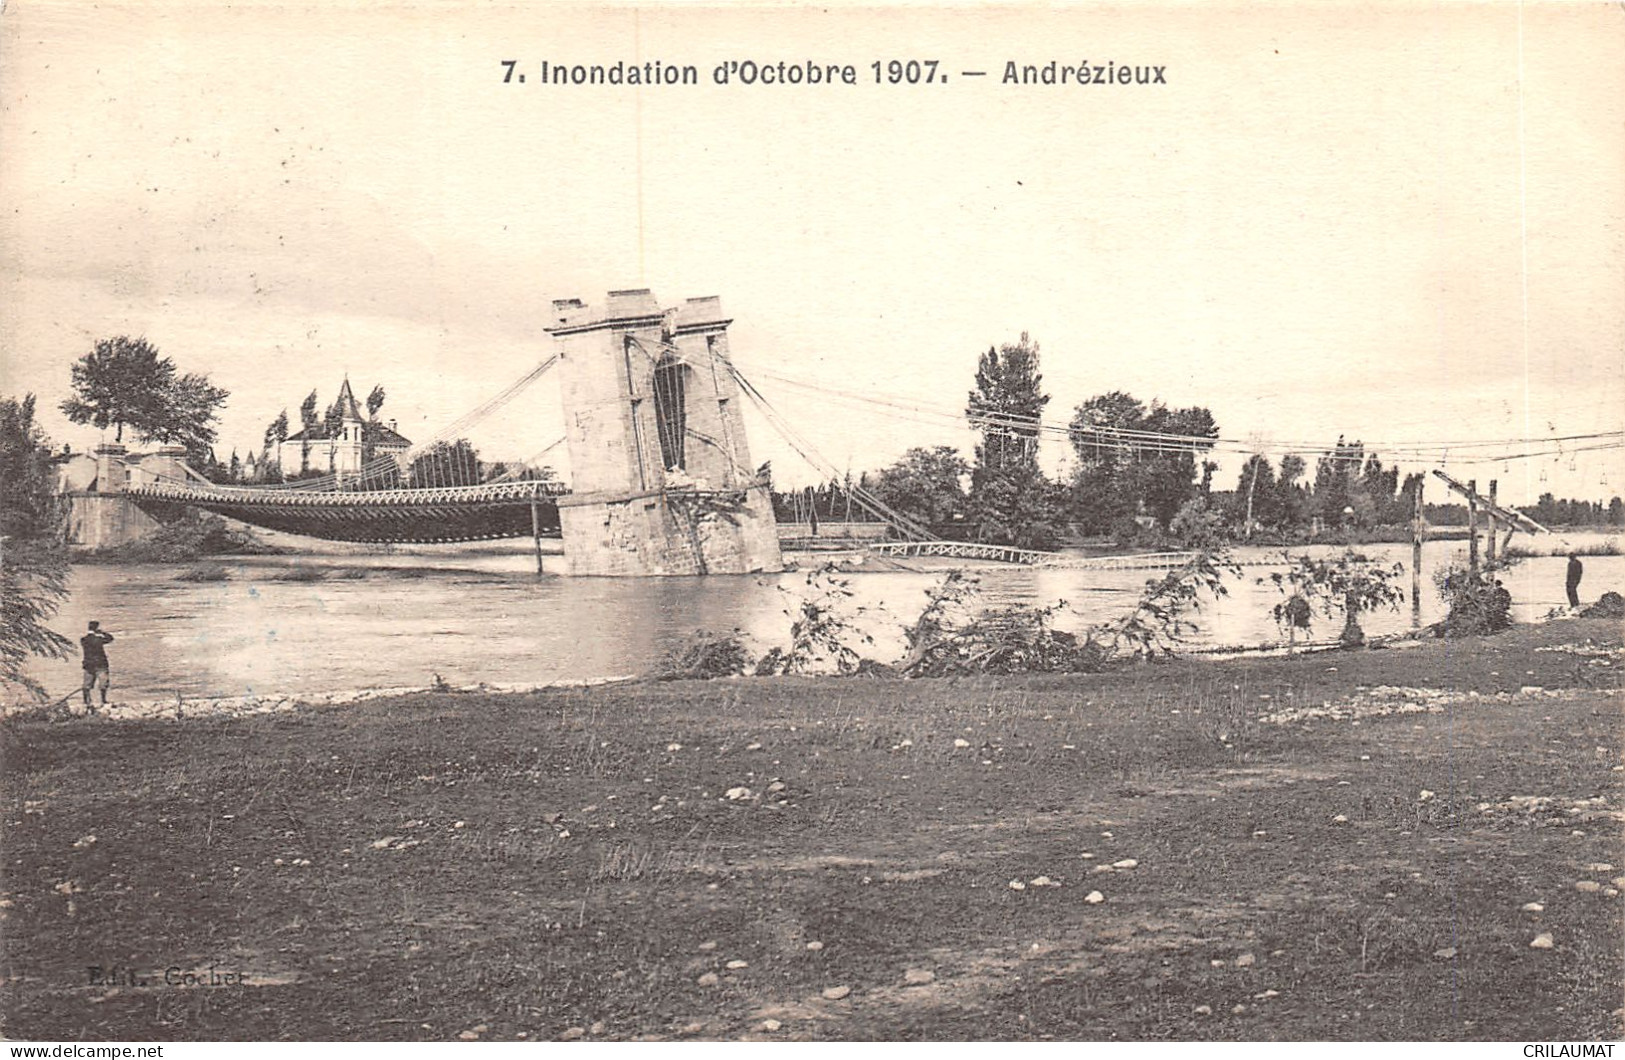 42-ANDREZIEUX-INONDATION D OCTOBRE 1907-N T6021-H/0387 - Andrézieux-Bouthéon